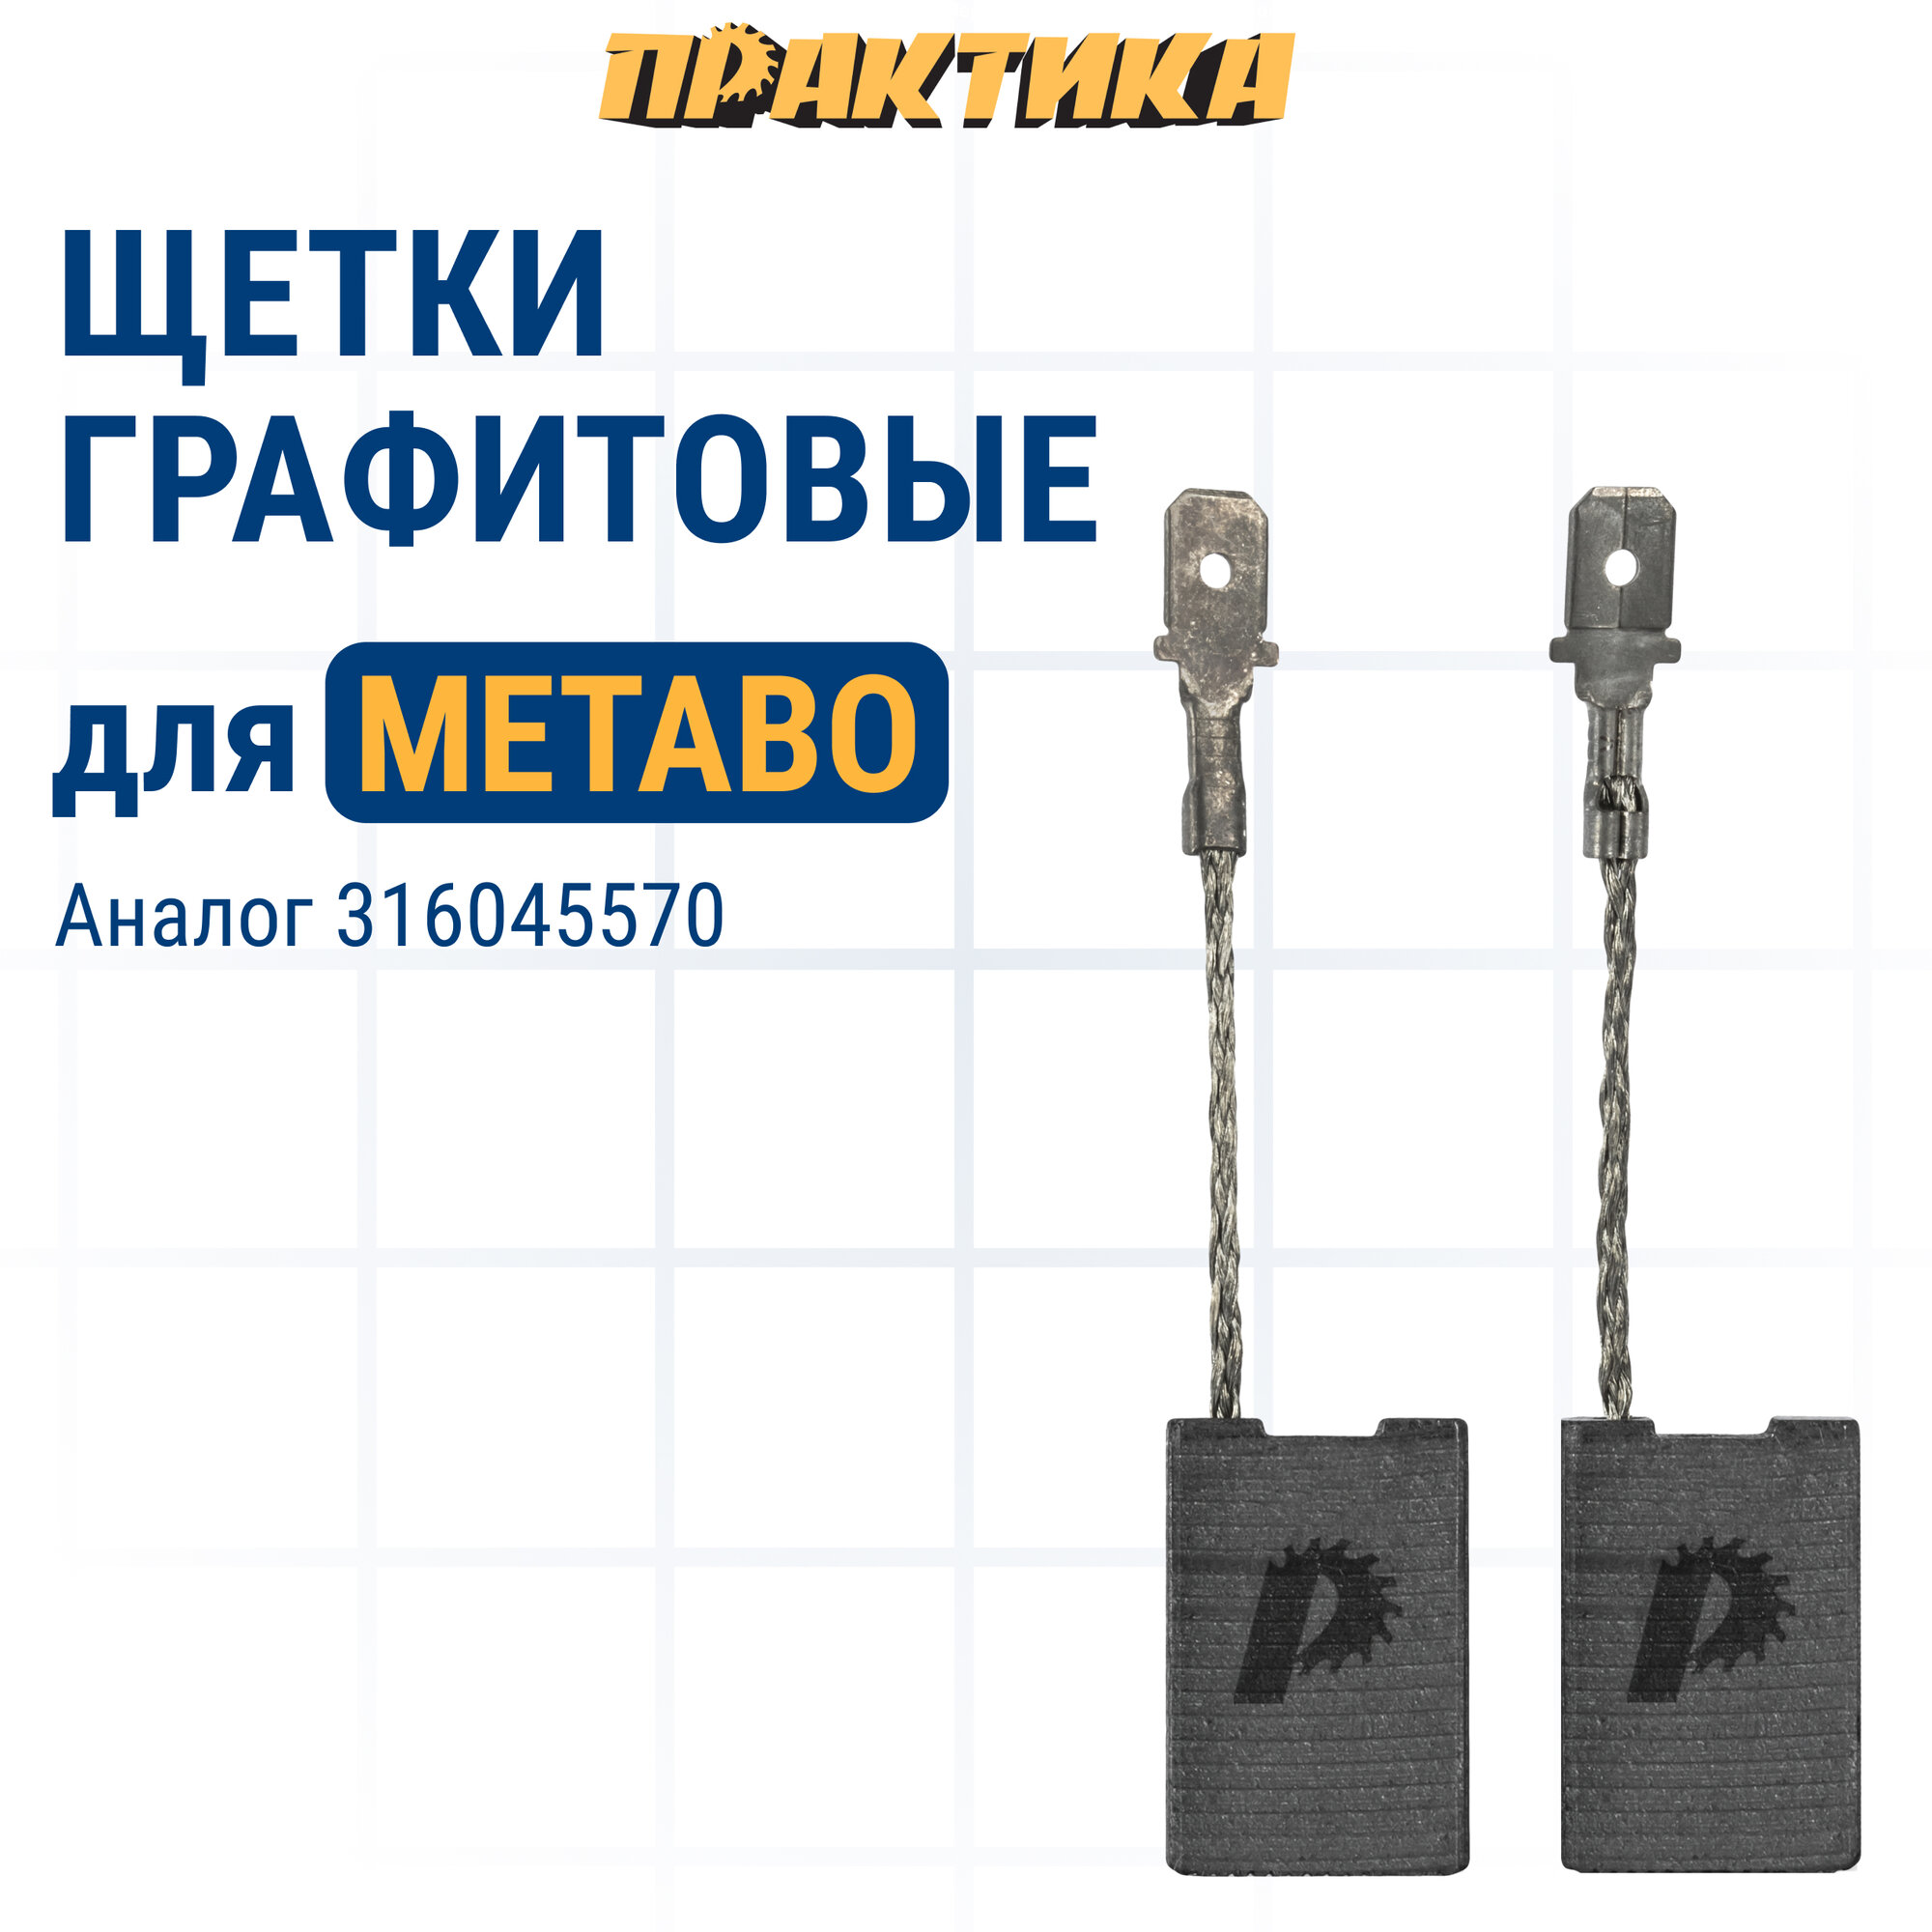 Щетка графитовая ПРАКТИКА для METABO (аналог 316045570) 6х16х24 мм, автостоп (790-663)